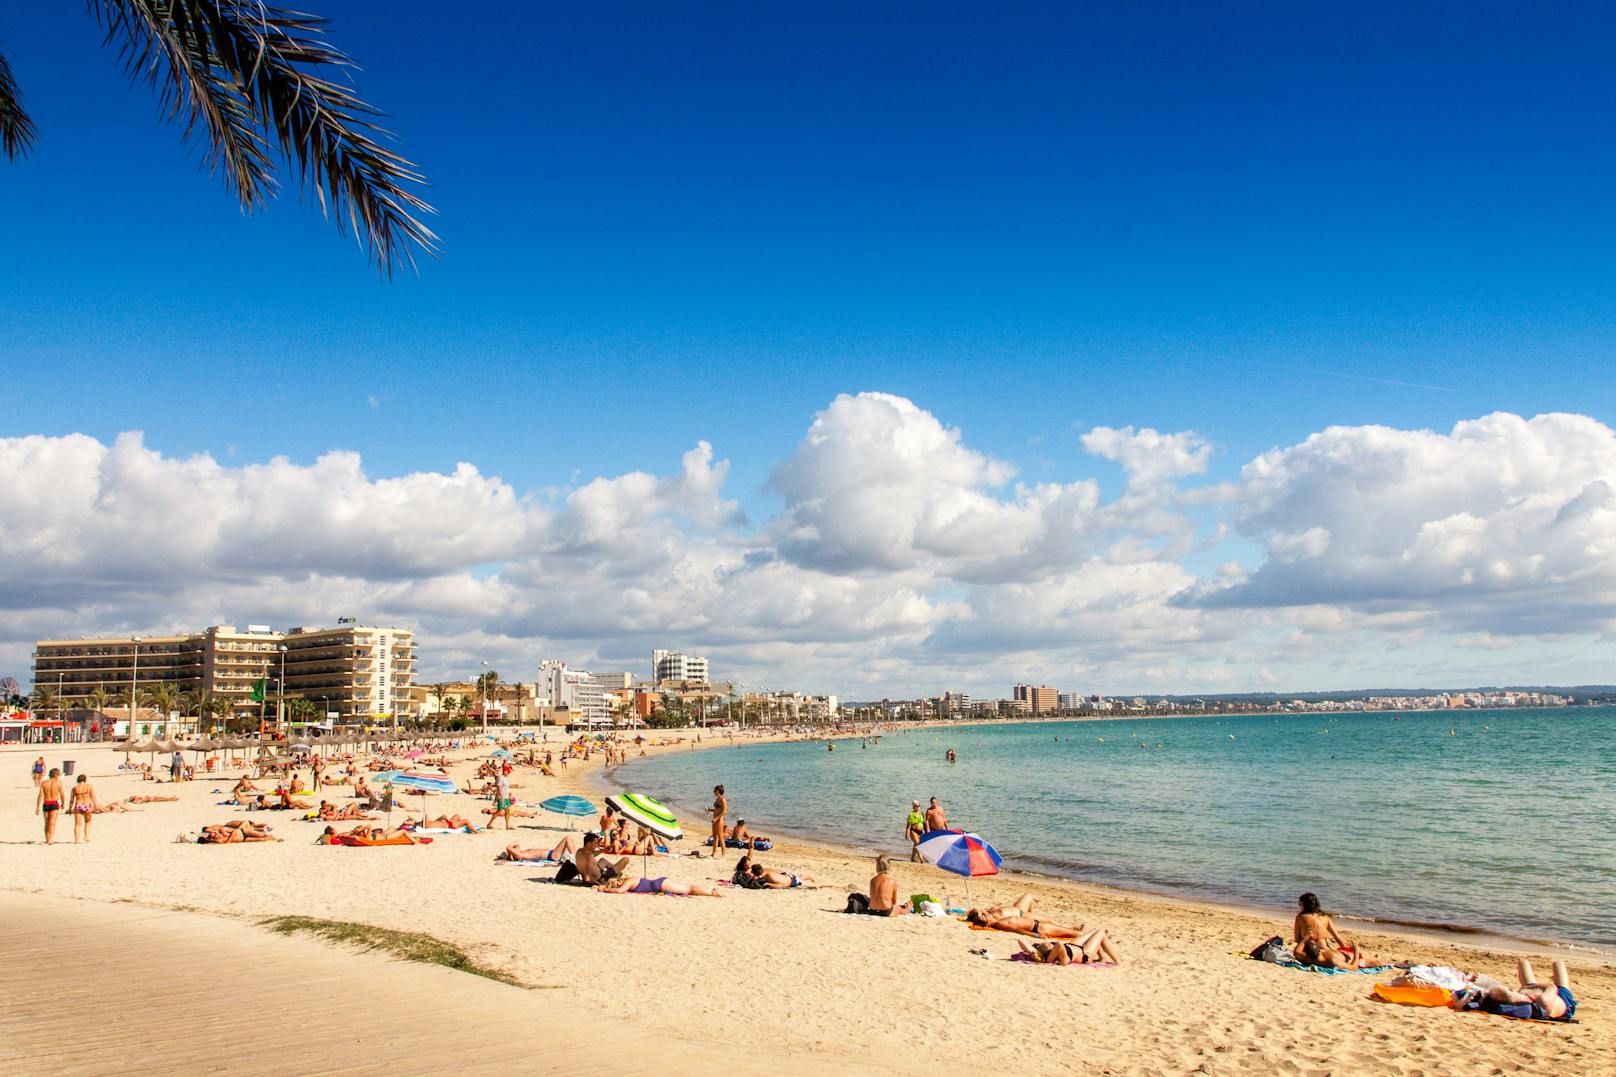 Ausgerechnet der berühmte Ballermann-Strand <strong>Platja de Palma</strong> muss in diesem Jahr ohne Qualitätssiegel auskommen.